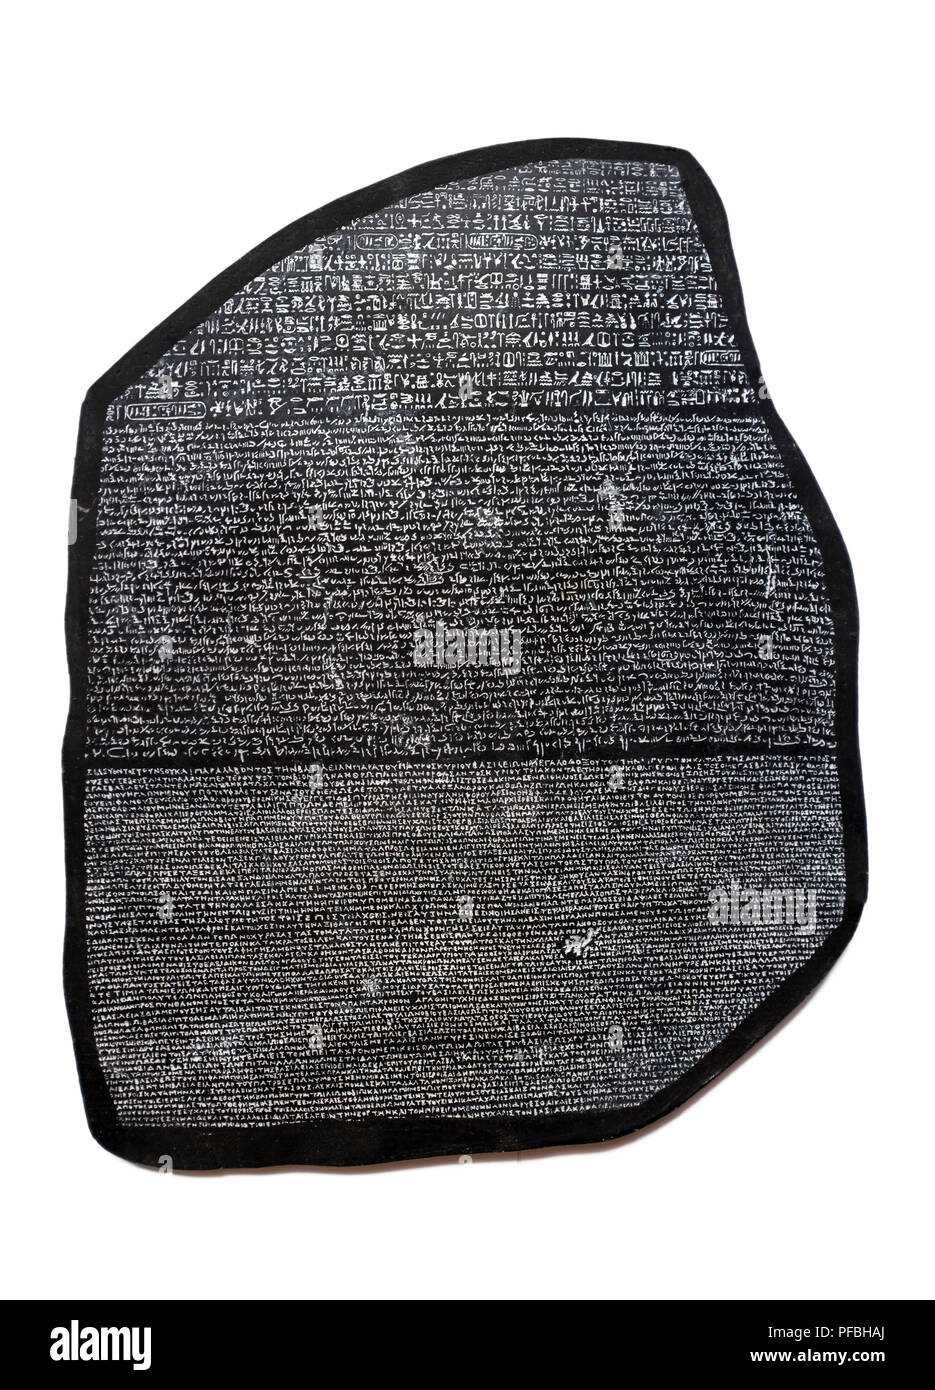 Riproduzione di Rosetta Stone, la chiave per la decifrazione di geroglifici egiziani. Isolate su uno sfondo bianco Foto Stock